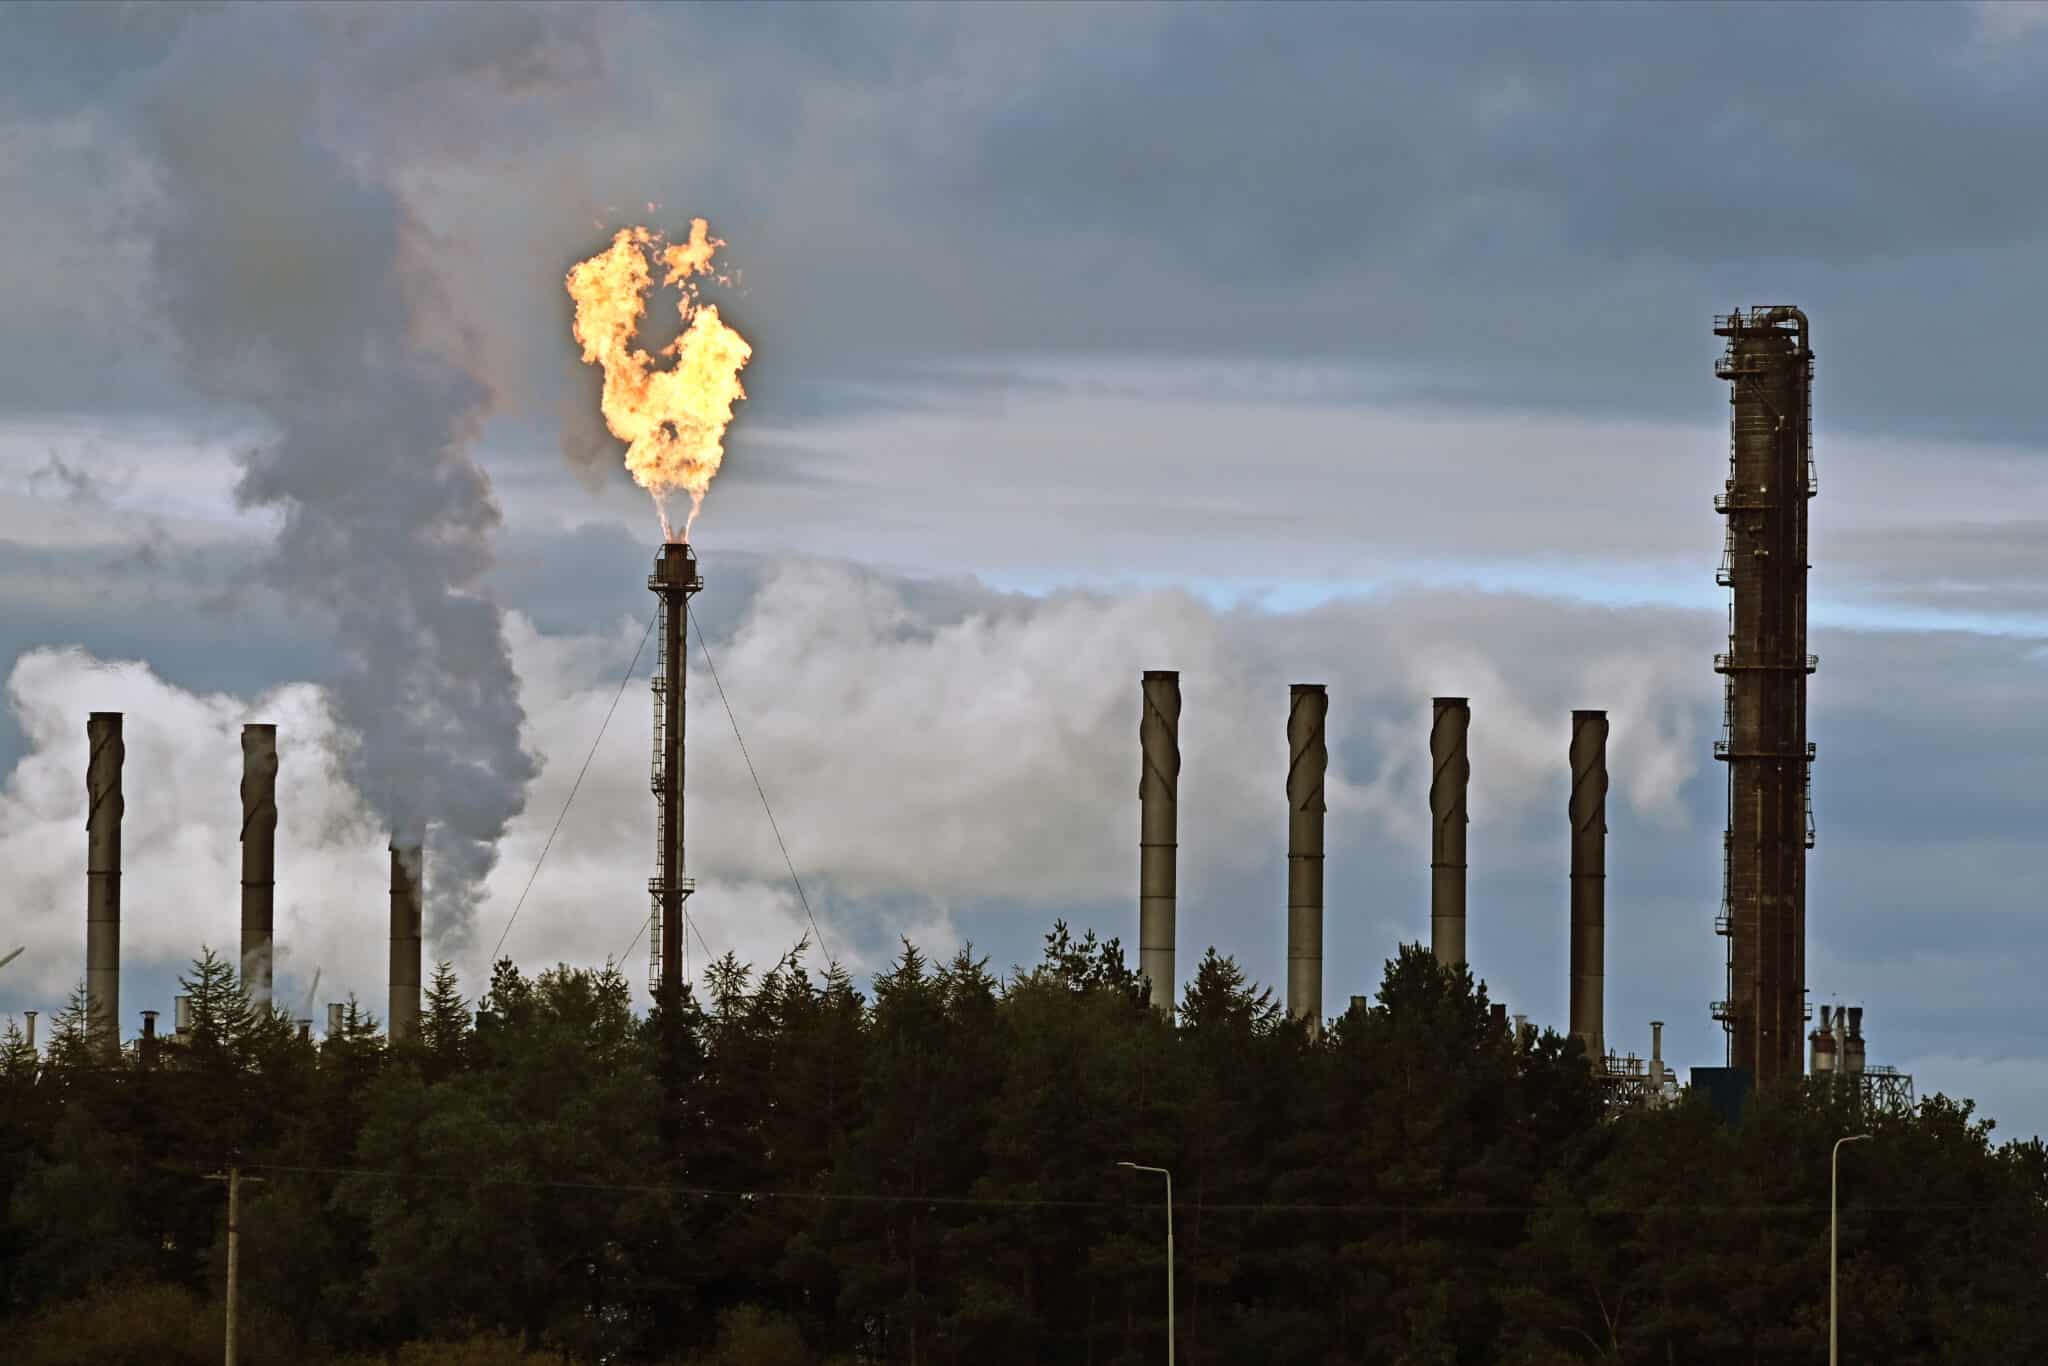 Lángok csapnak ki az ExxonMobil Mossmorran üzemének kéményéből egy újabb, nem tervezett művelet során, 2020. október 4-én a skóciai Cowdenbeathben. A Skót Környezetvédelmi Ügynökség vizsgálatot folytat a mossmorrani üzemben történt egészségkárosító eset miatt.